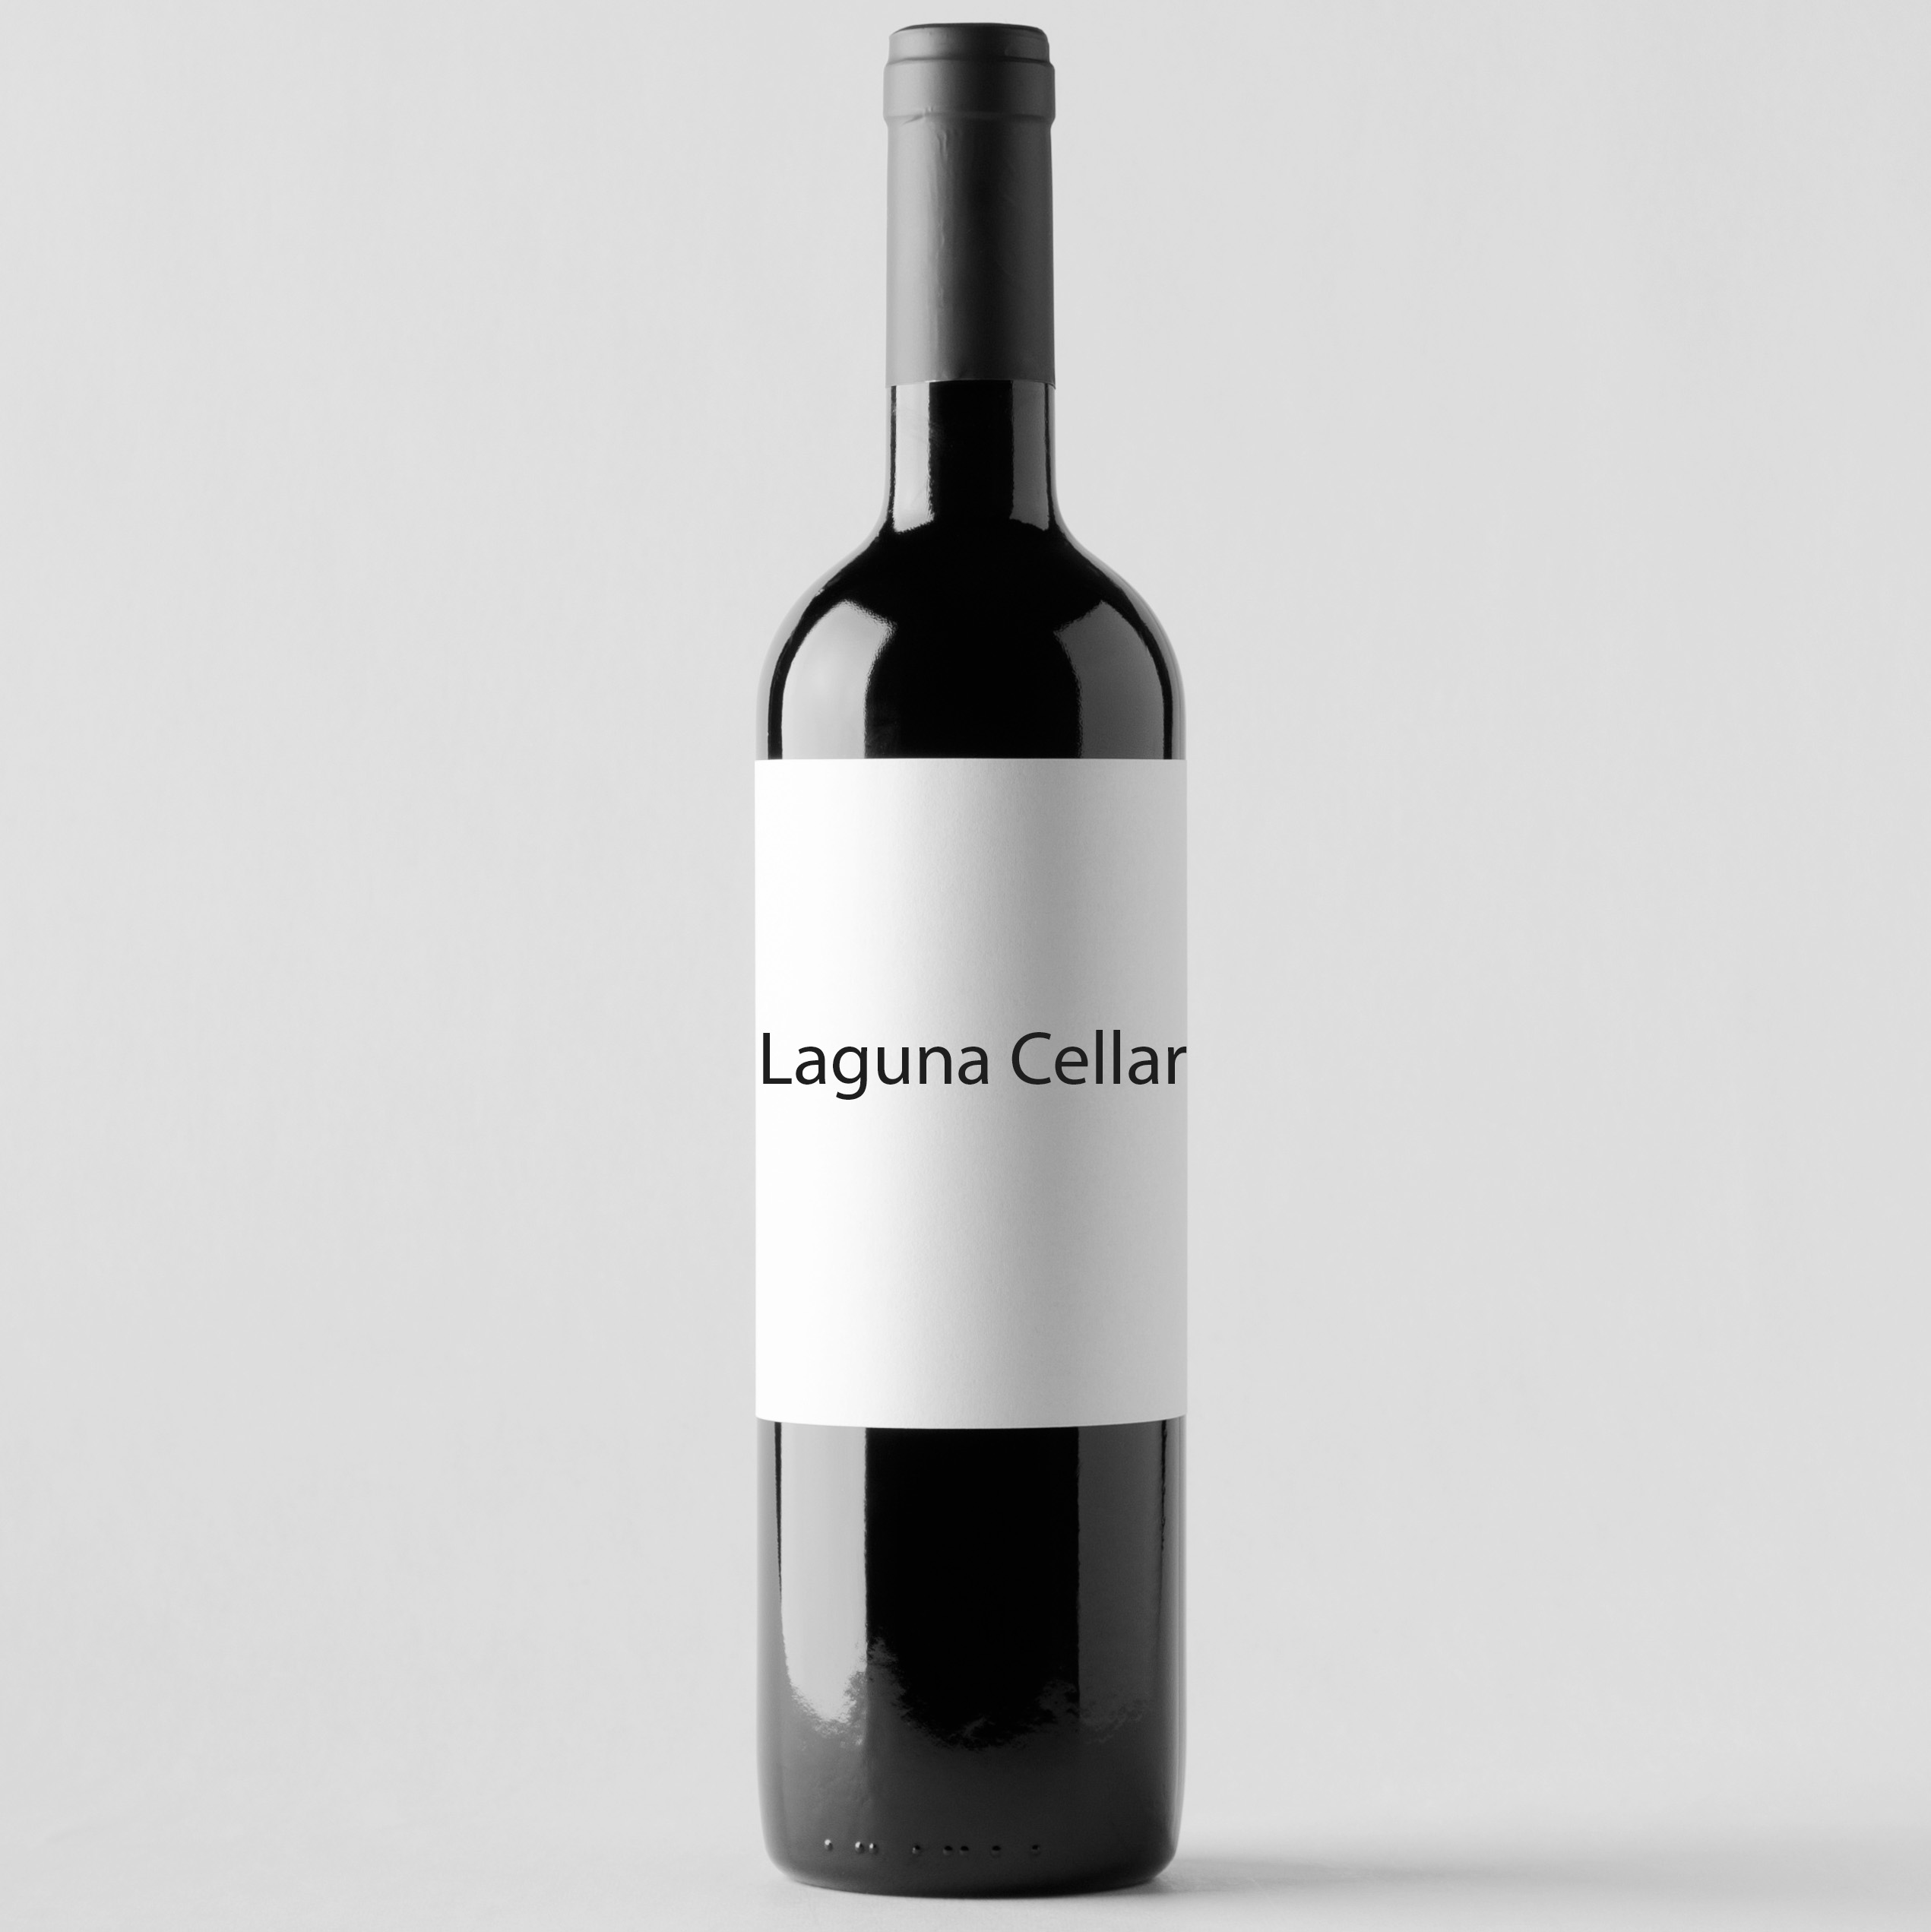 Laguna Cellar featuring Alter Ego de Palmer 2007